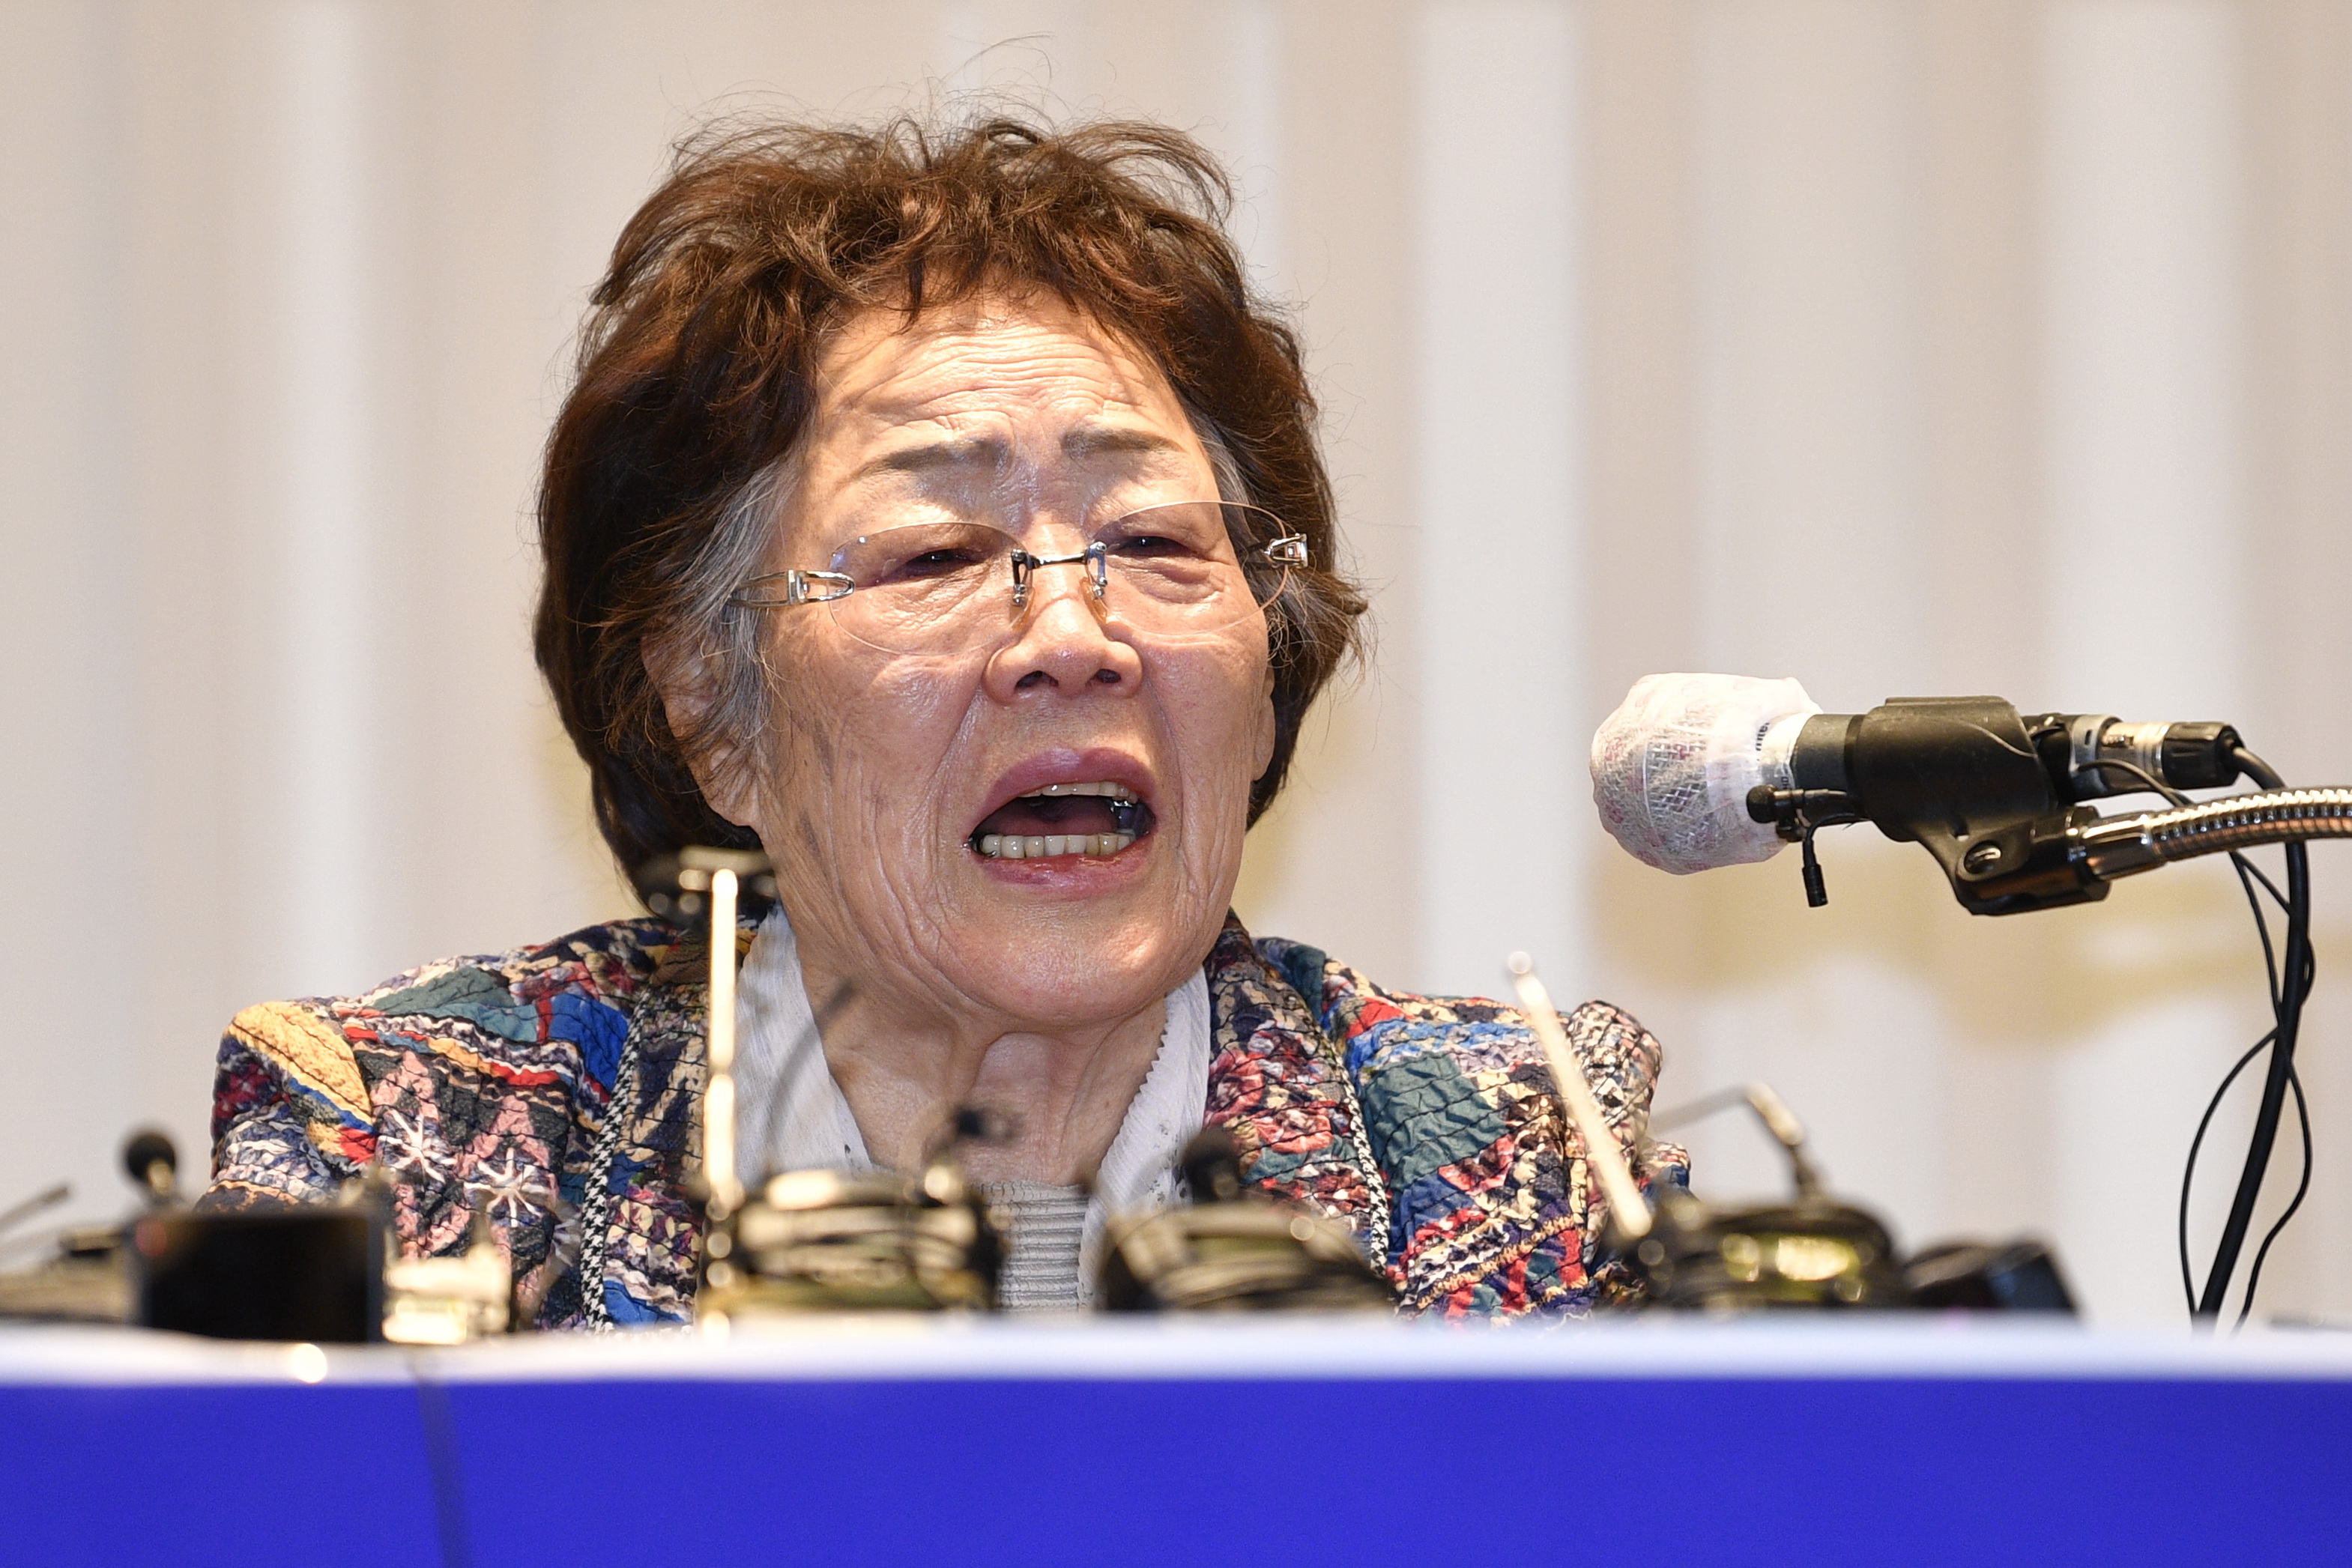 정의연 후원금 유용 의혹을 폭로한 일본군 위안부 피해자 이용수 할머니가 25일 대구 수성구 만촌동 인터불고 호텔에서 2차 기자회견을 열고 발언을 하고 있다. 2020. 5. 25 정연호 기자 tpgod@seoul.co.kr